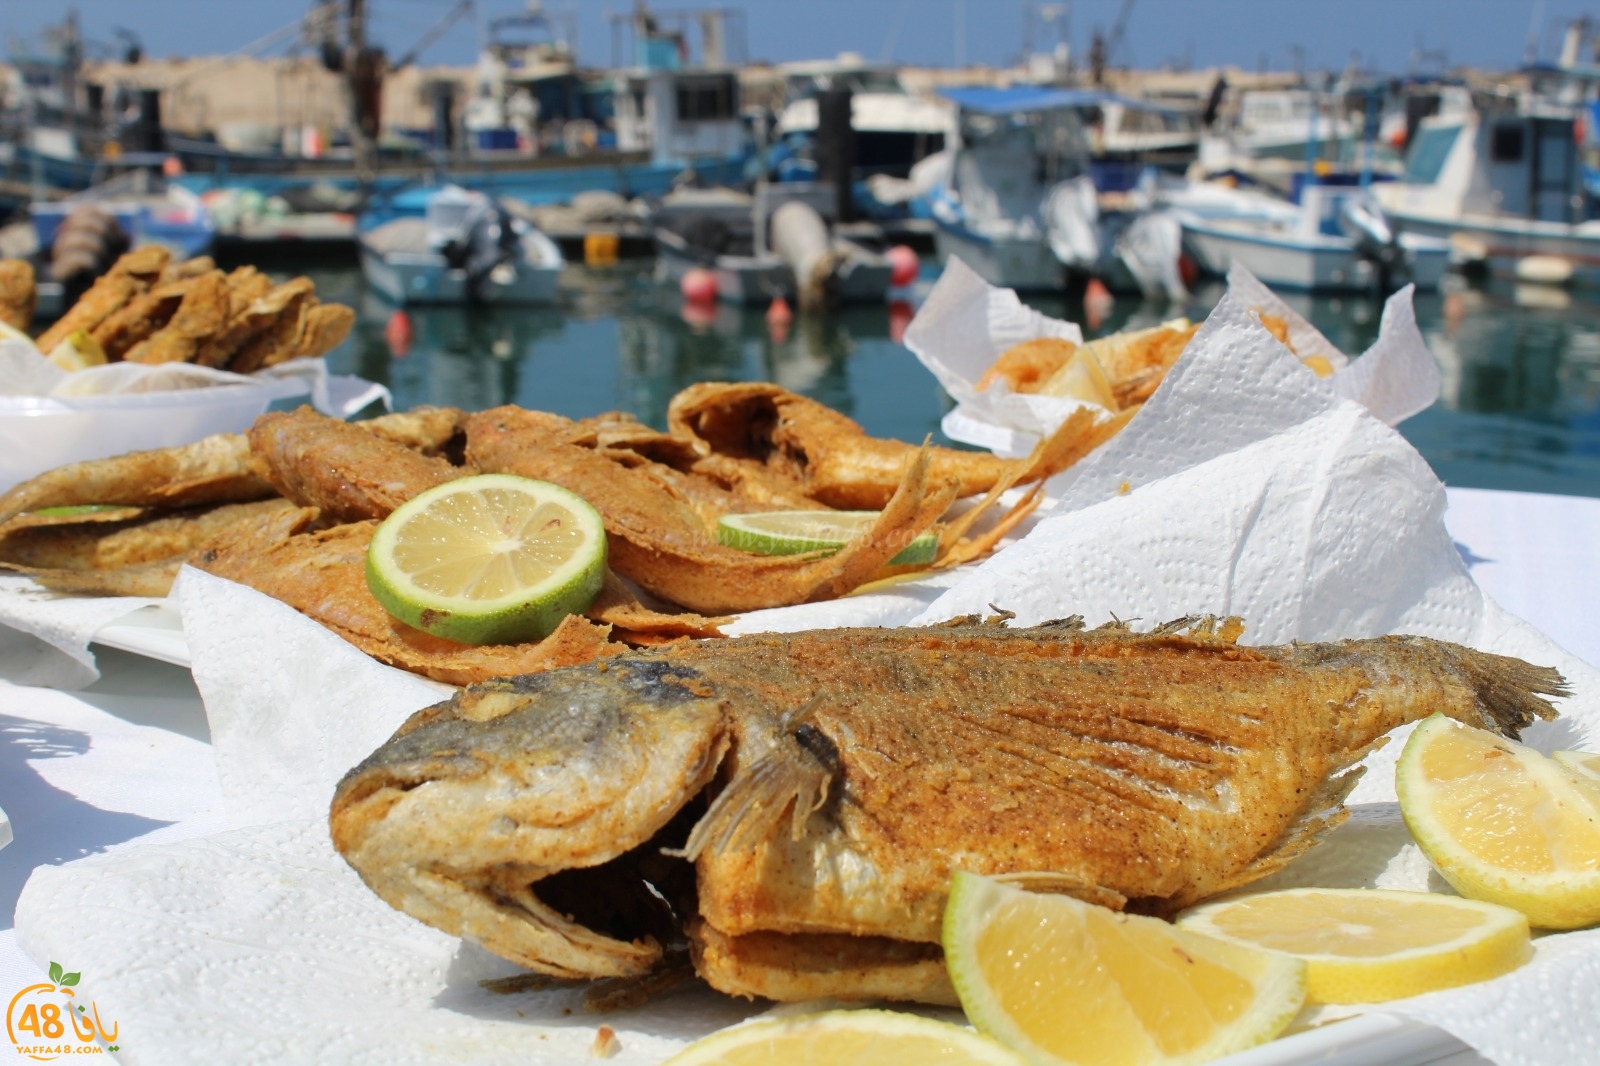   يافا: انتقال مطعم fish & chips للأسماك الطازجة الى مخزن 1 بميناء يافا 